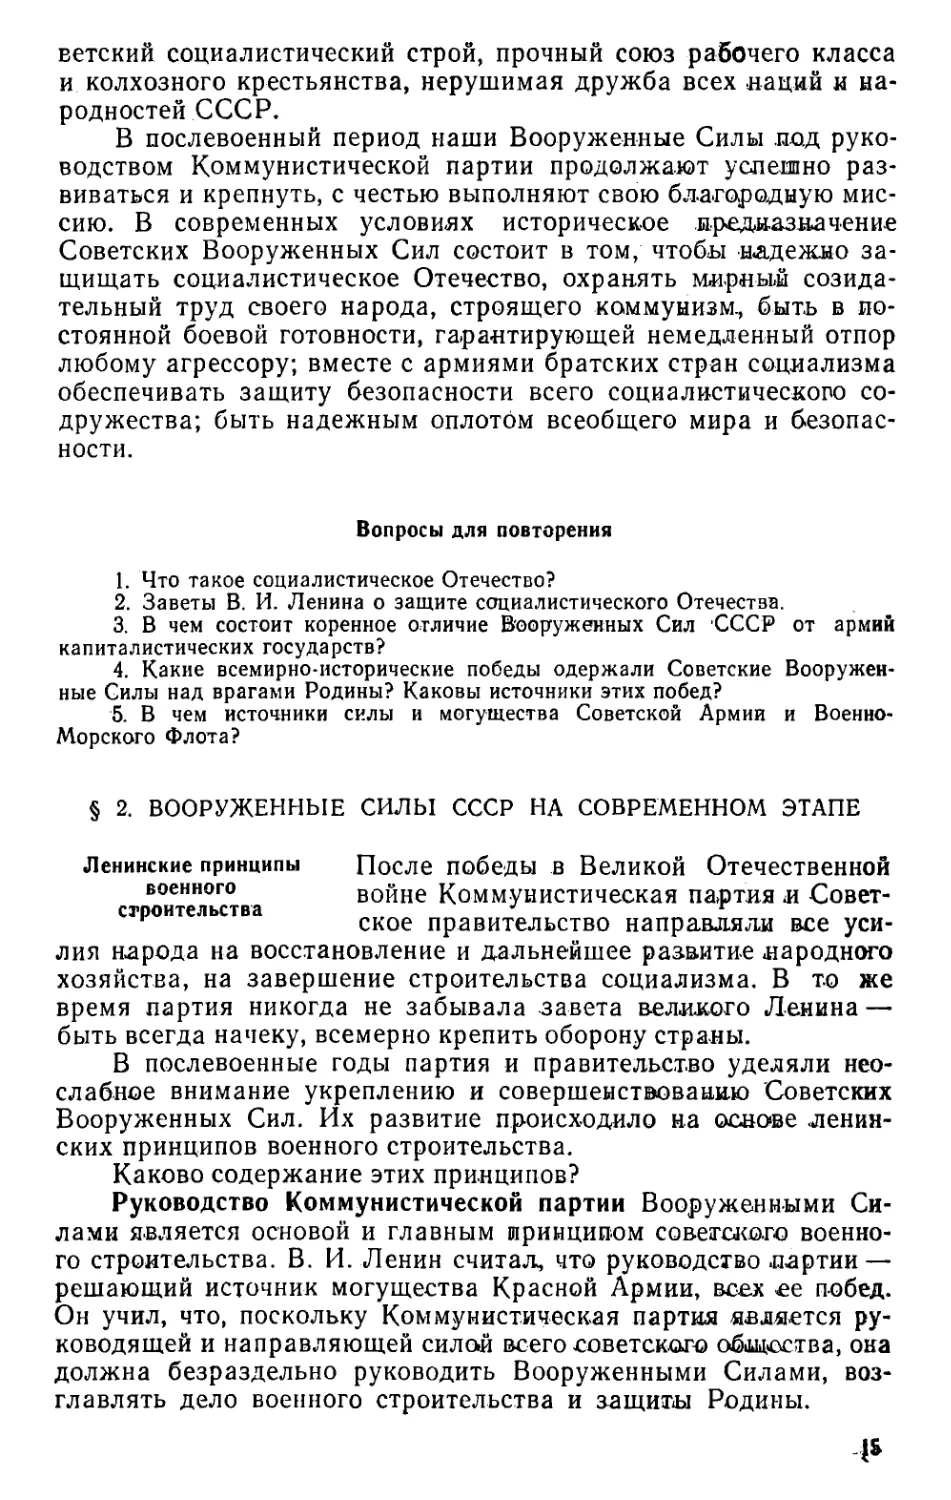 § 2. Вооруженные Силы СССР на современном этапе